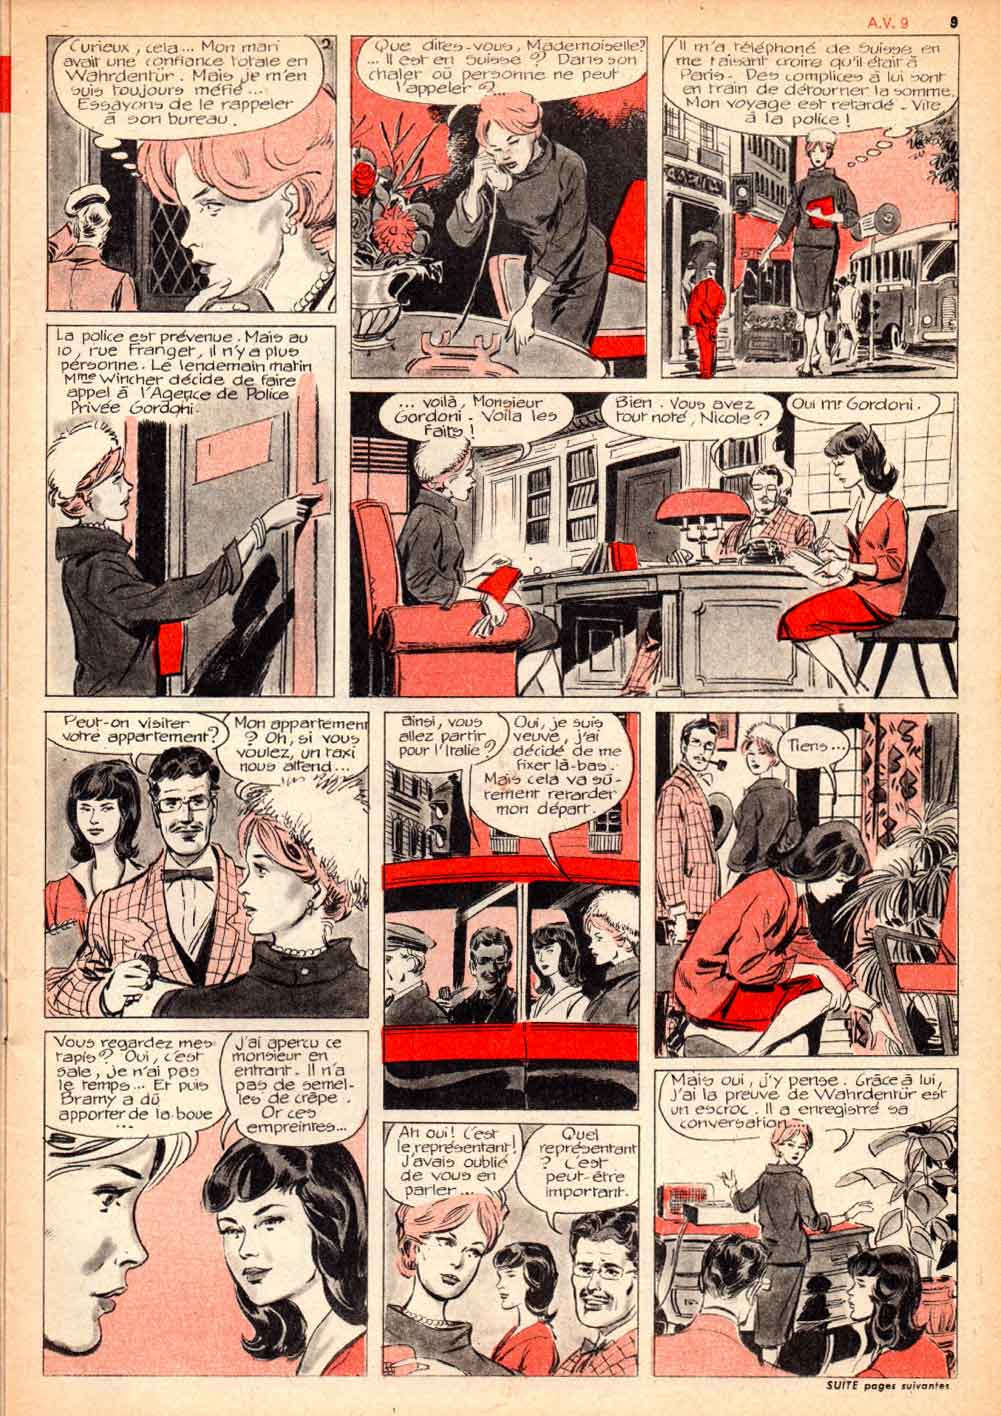 « Une enquête de Nicole » Âmes vaillantes n° 9 (01/03/1962).